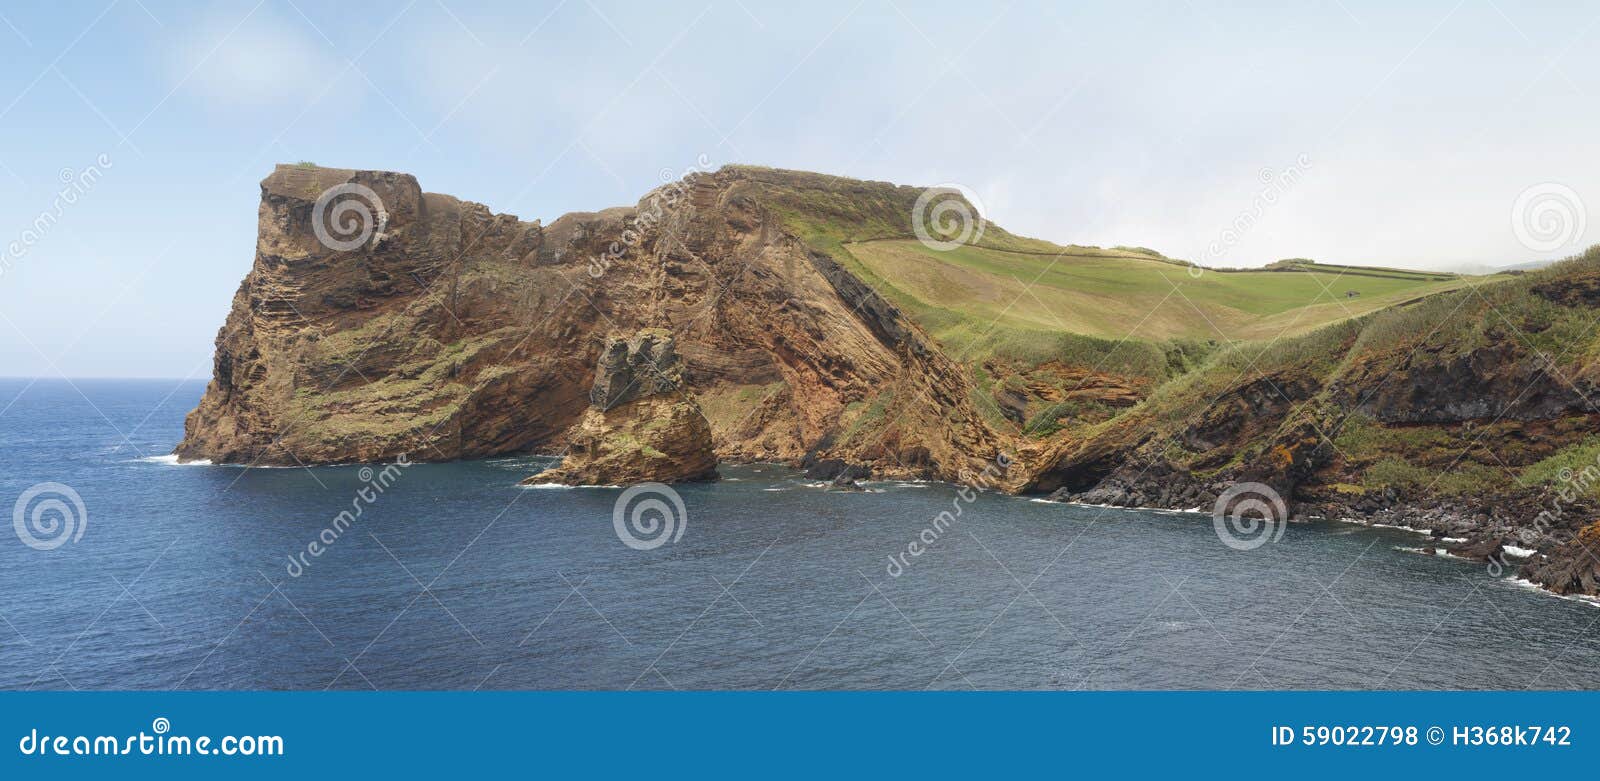 azores coastline in sao jorge island. baia entre morros. portuga